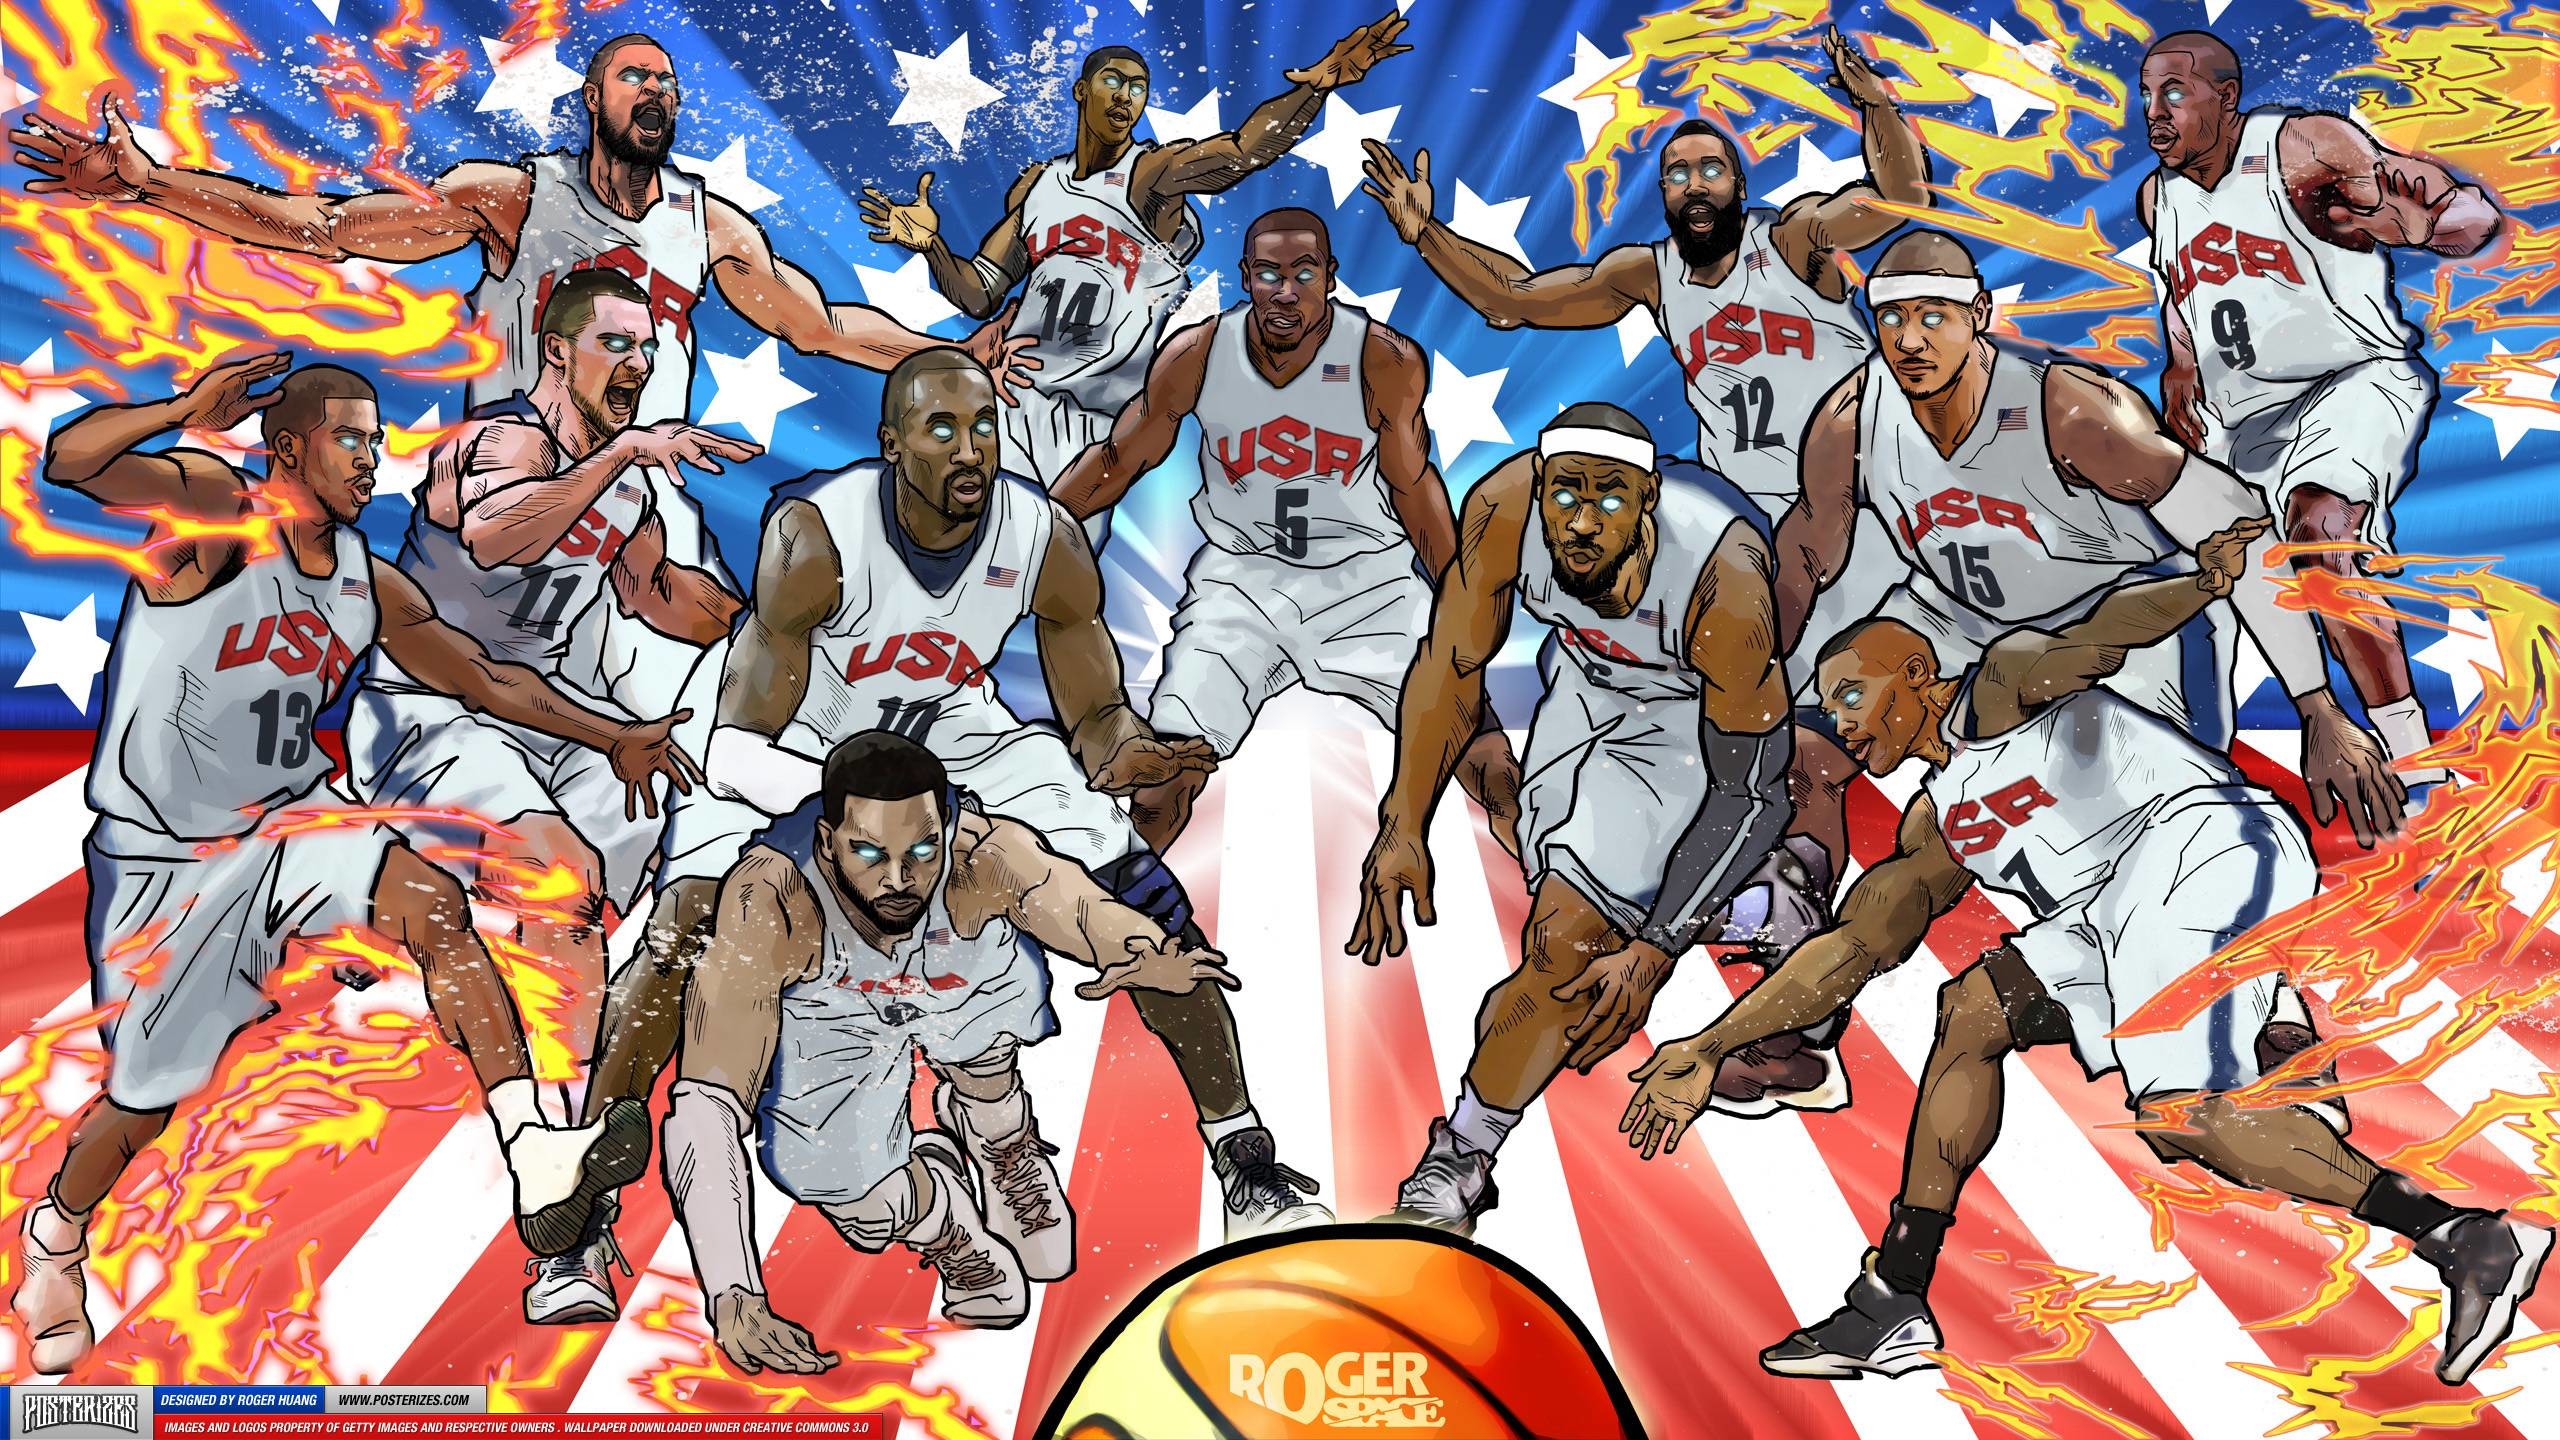 2560x1440 Explore Usa Wallpaper, Cartoon Wallpaper, and more! NBA Wallpapers Wallpaper